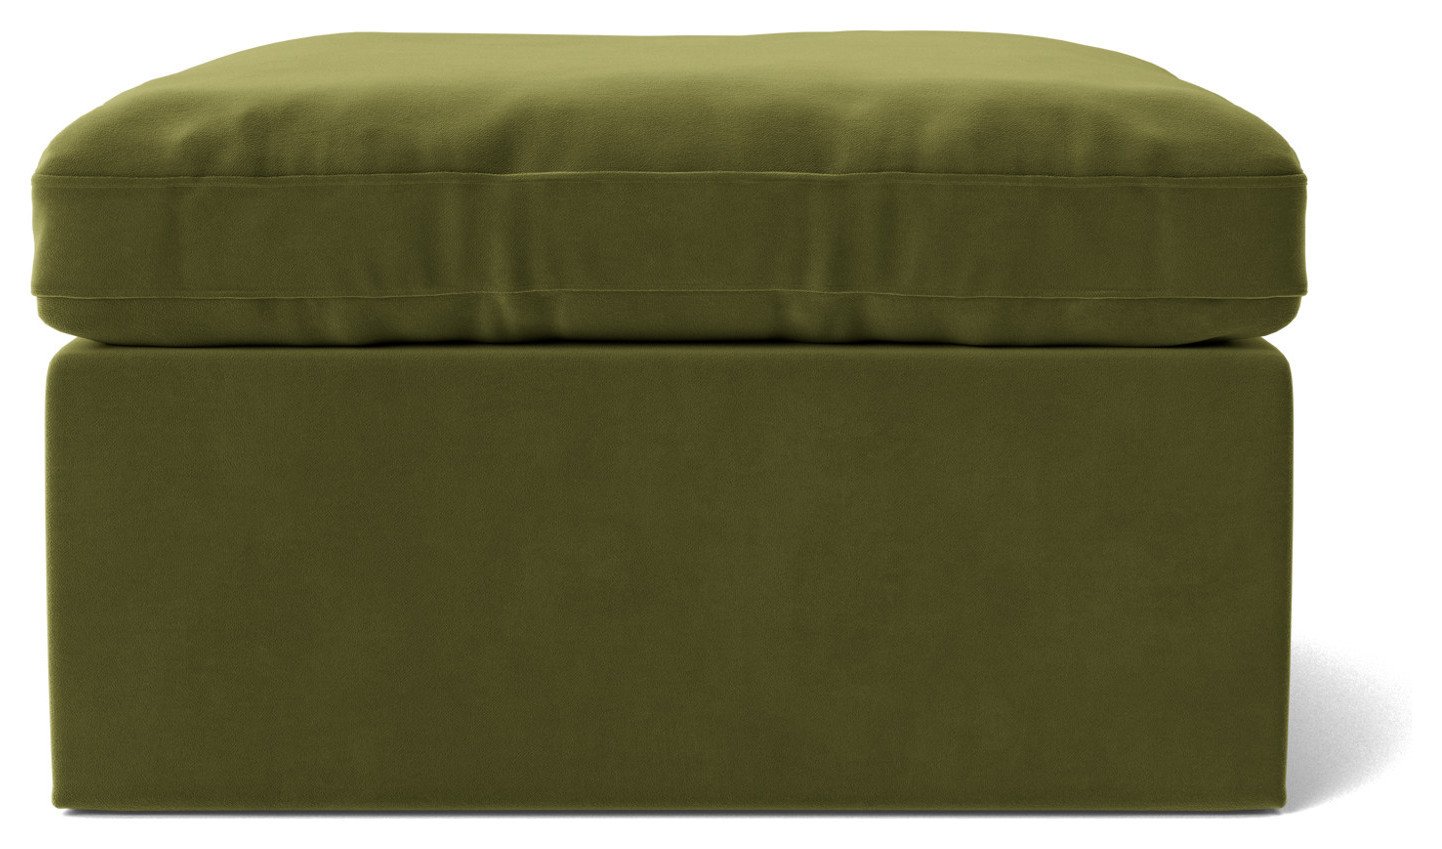 Swoon Seattle Velvet Ottoman Footstool - Fern Green